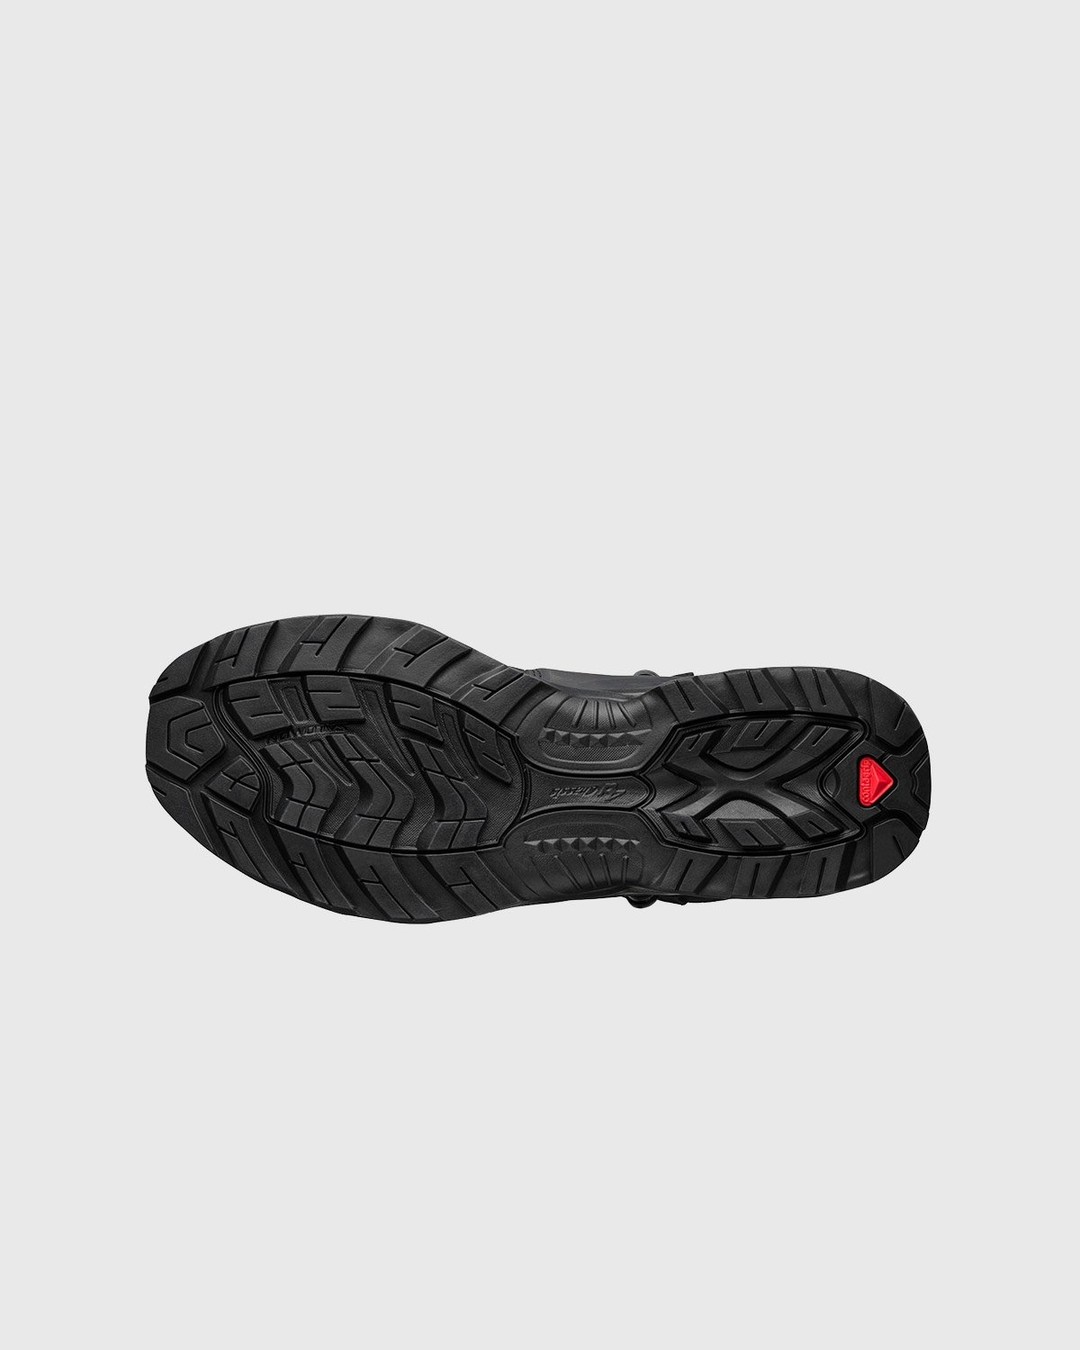 Salomon – Quest 4D GTX Advanced Black - Hiking Boots - Black - Image 5